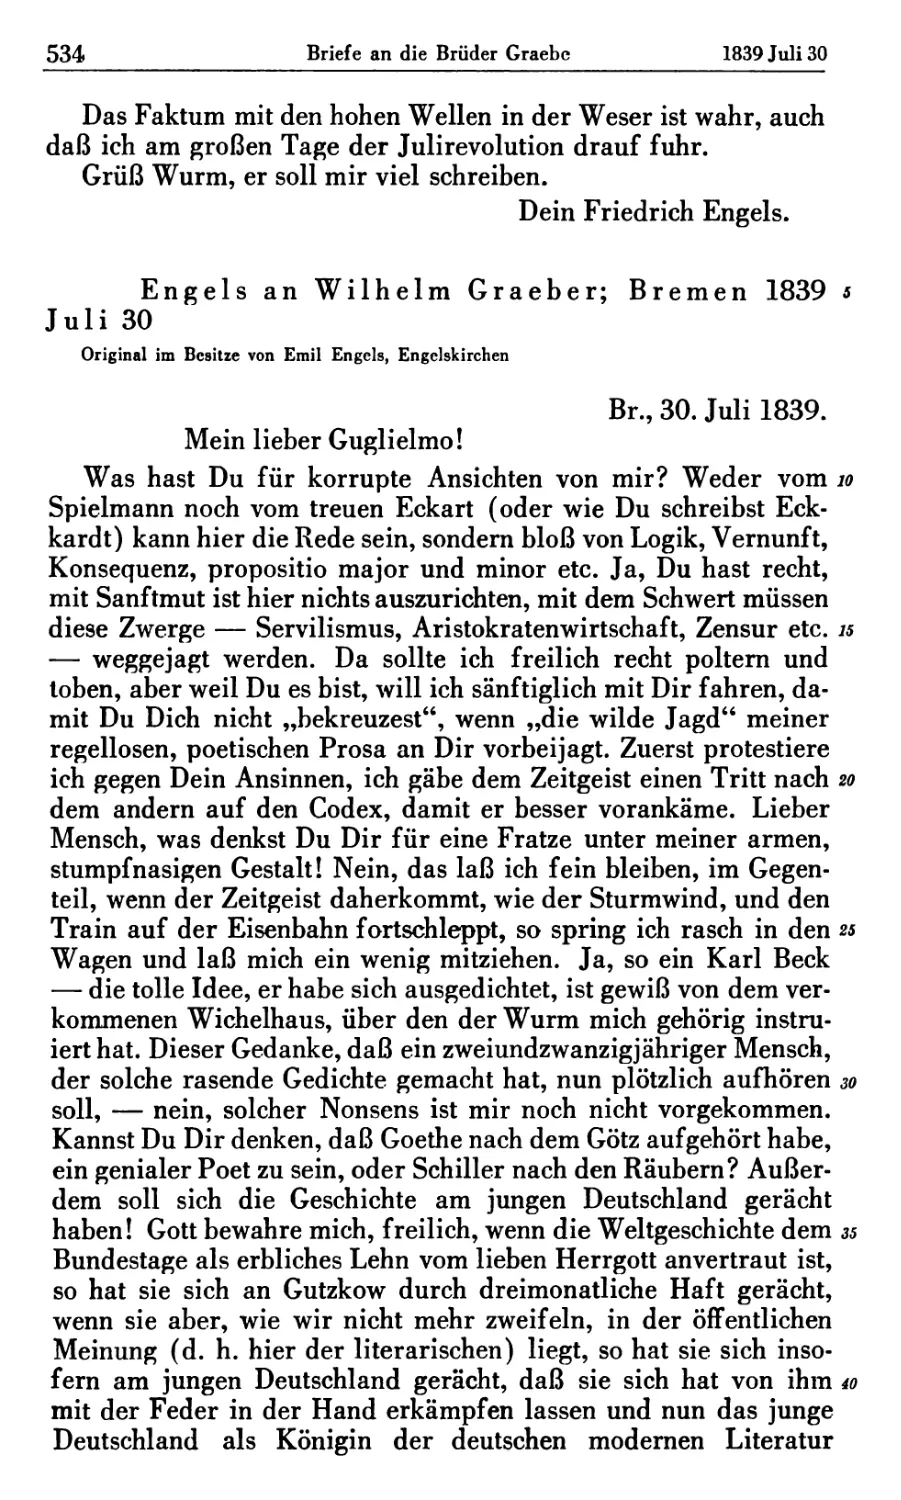 Engels an Wilhelm Graeber; Bremen 1839 Juli 30